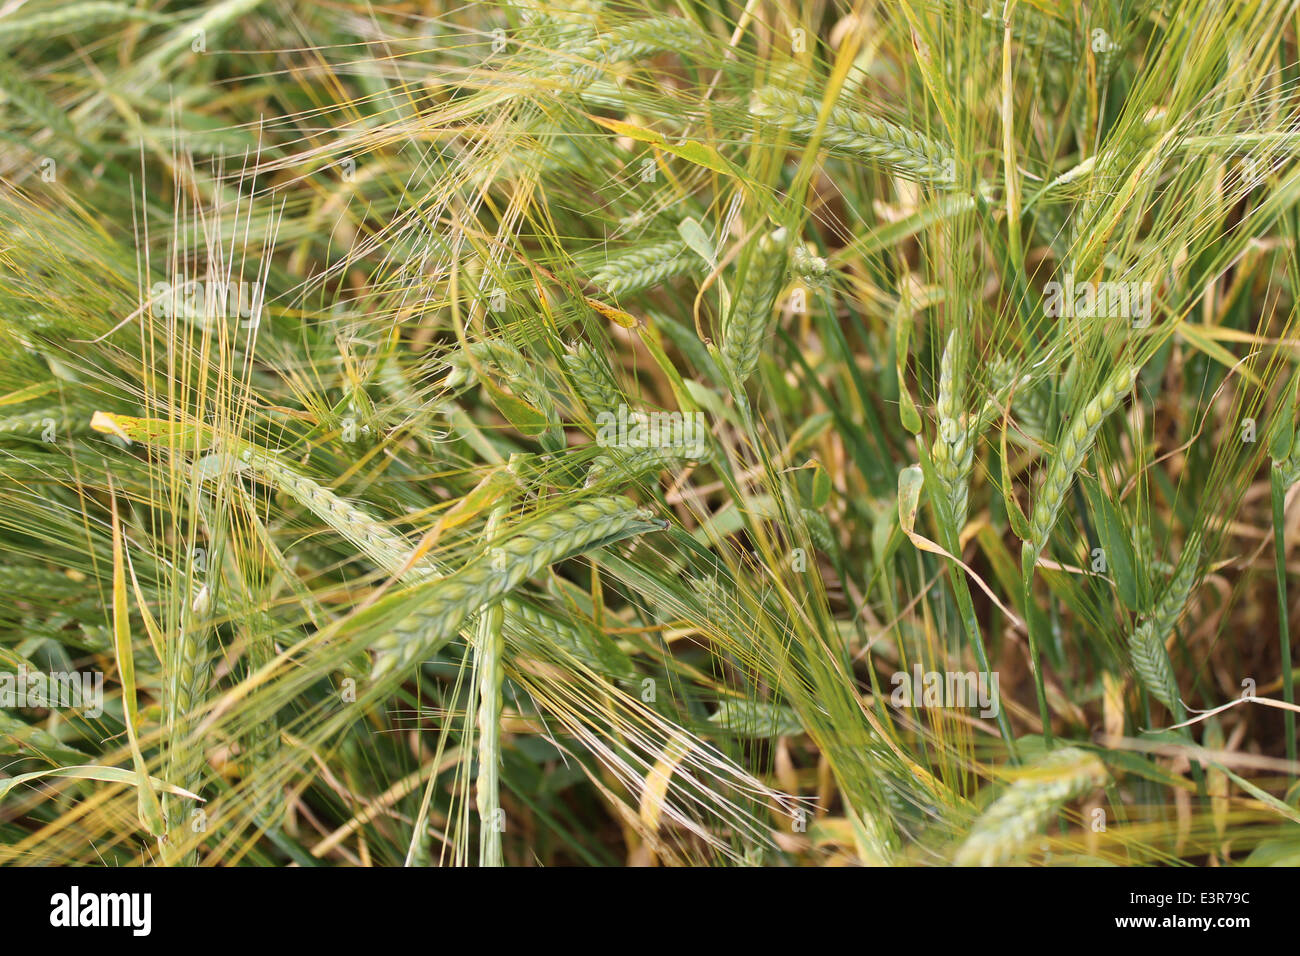 ripen wheat field under warm summer sun Stock Photo